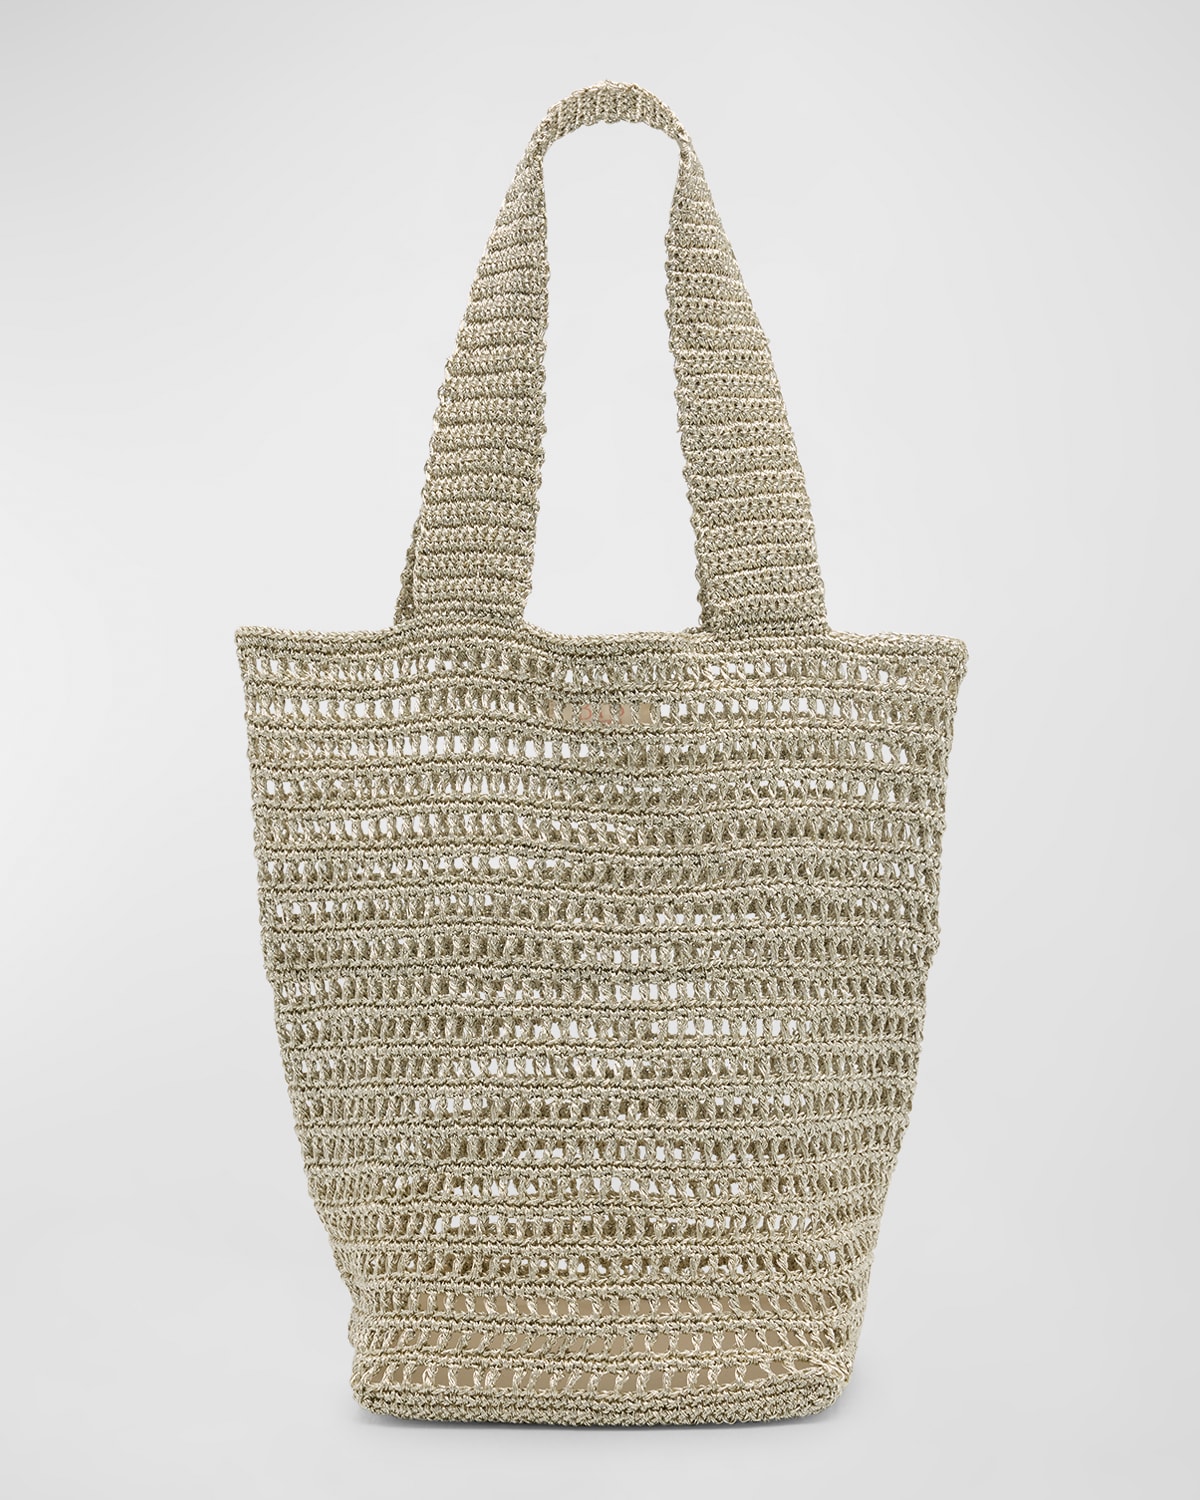 Jackie Crochet Tote Bag